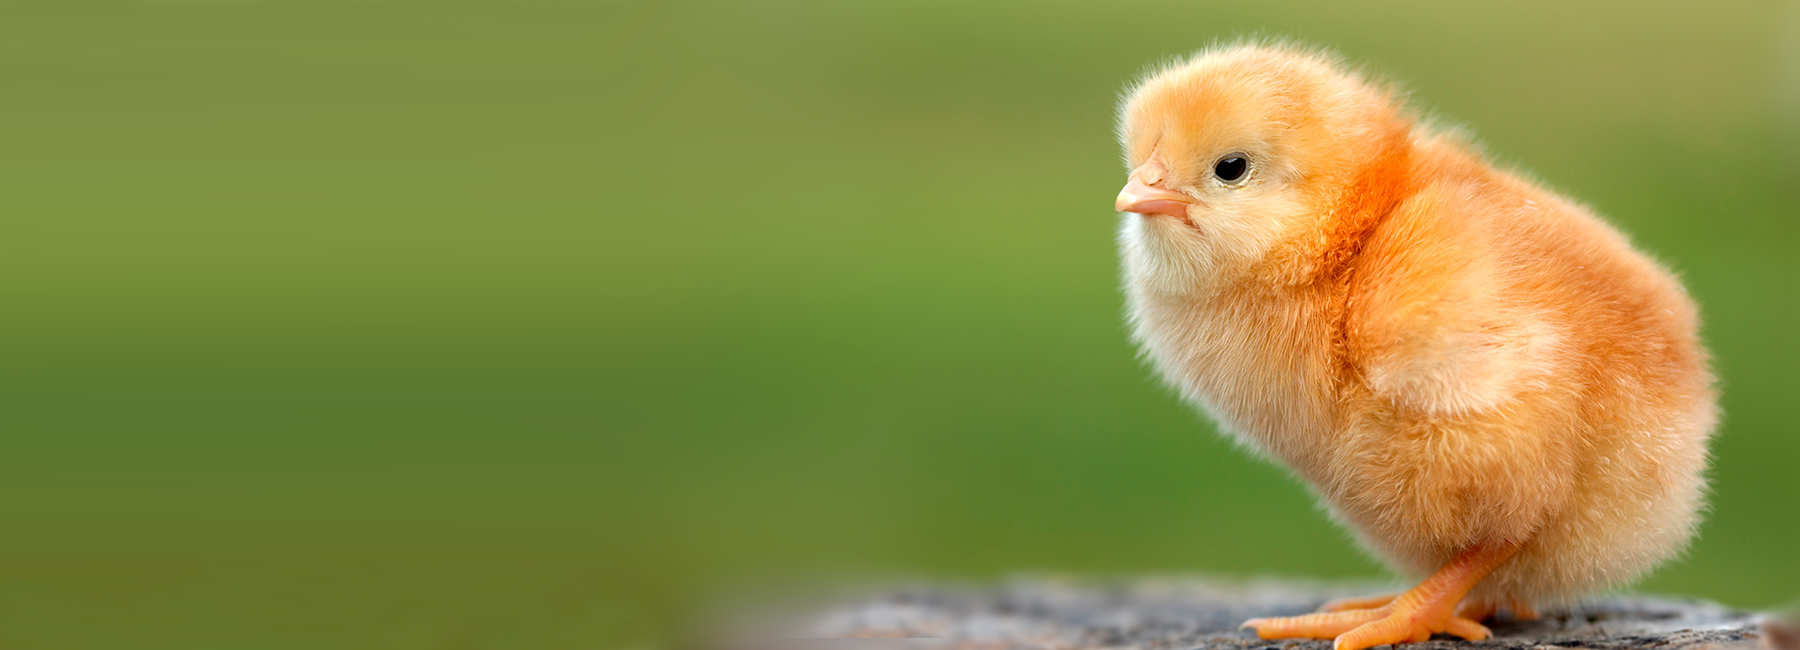 Butirex C4 : Efectos sobre el incremento de consumo y su impacto nutricional en el pollo de 0 a 14 días